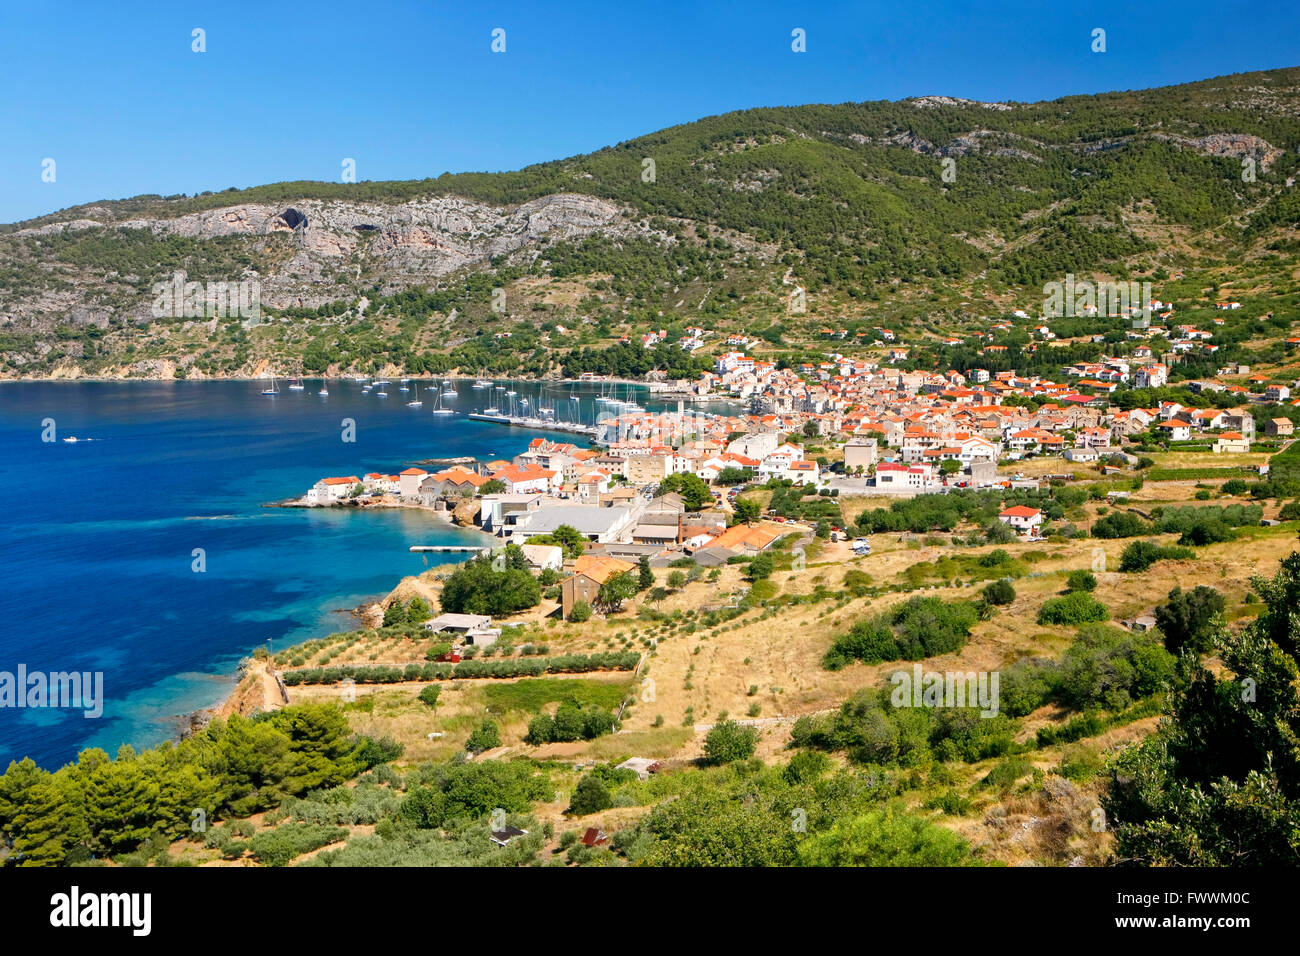 Komiza town on island Vis in Croatia Stock Photo